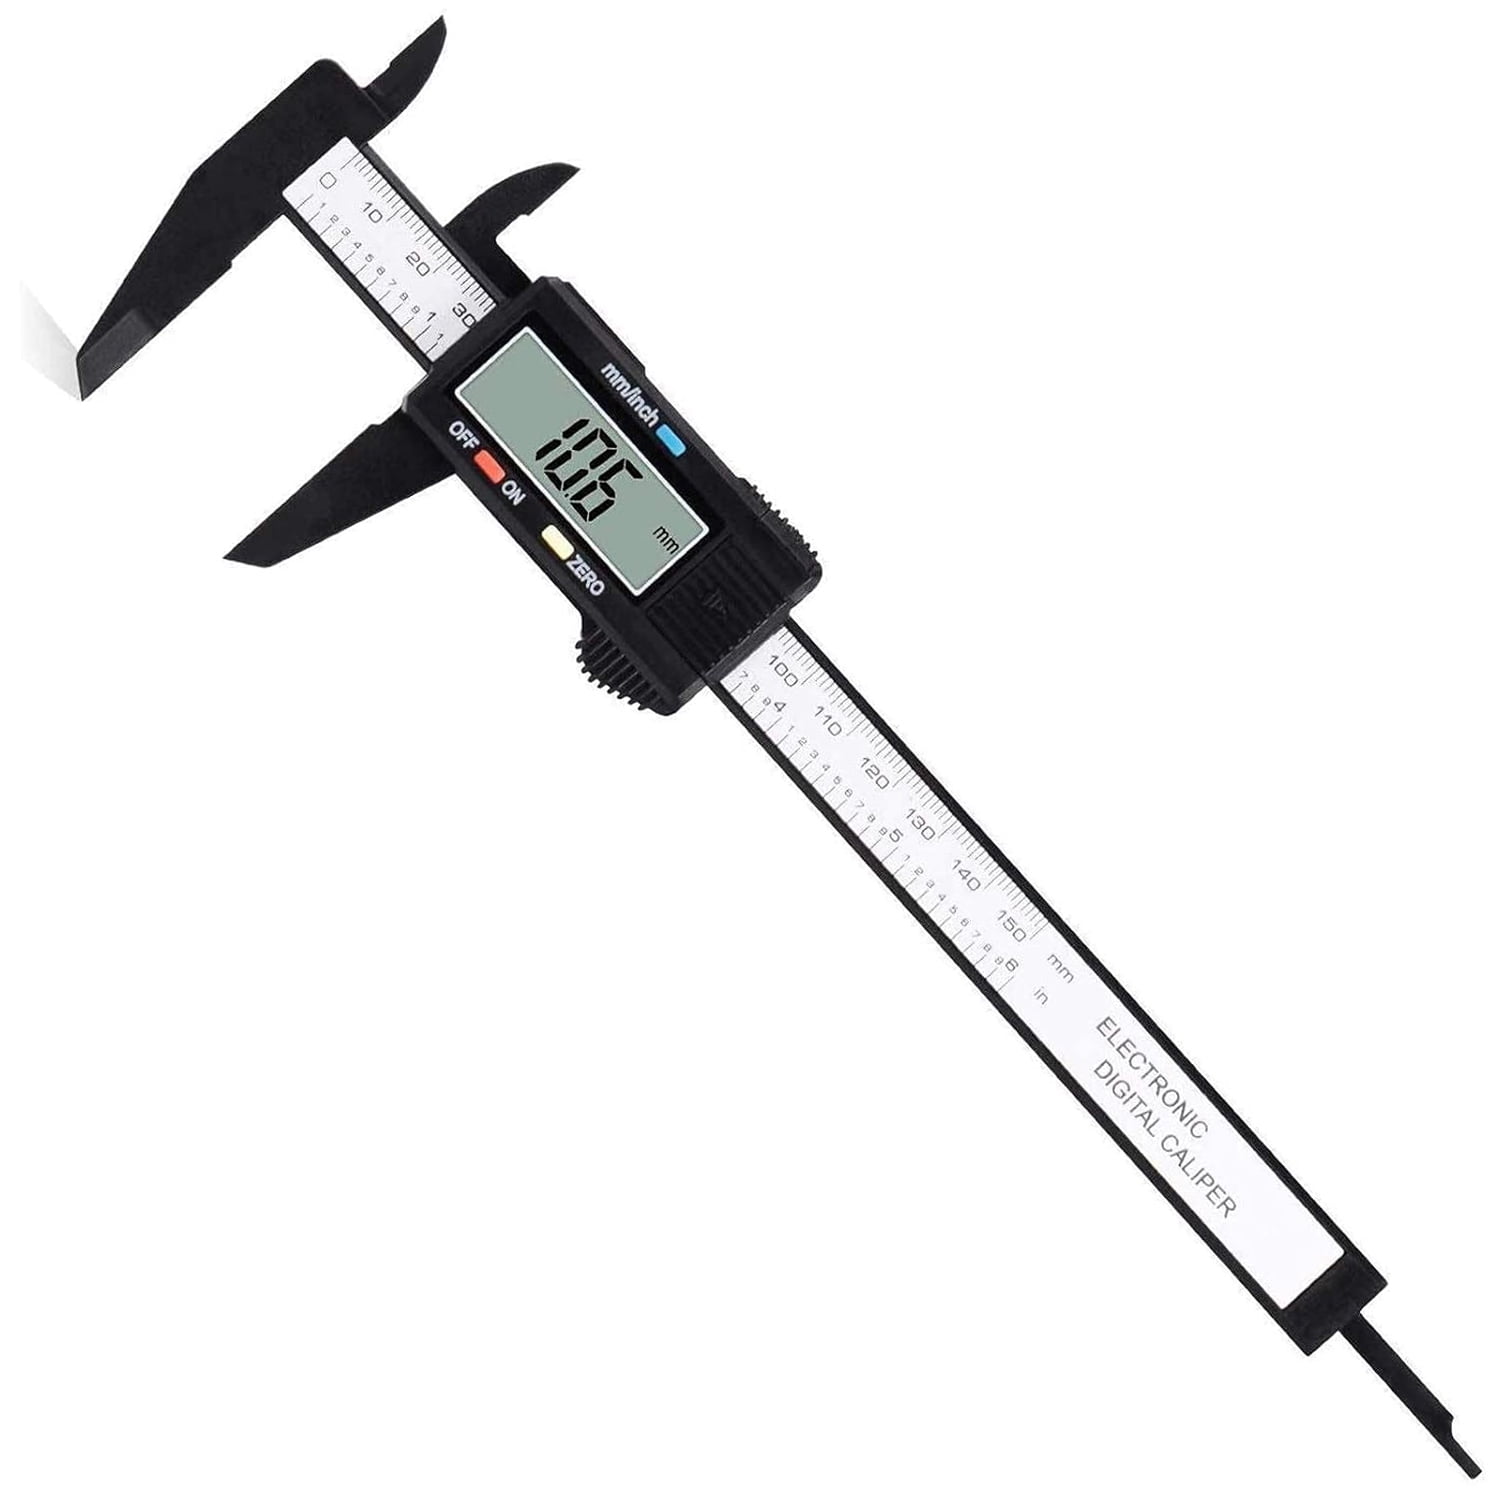 Caliper Tool Vernier Caliper Metal Calipers Micrometer Caliper